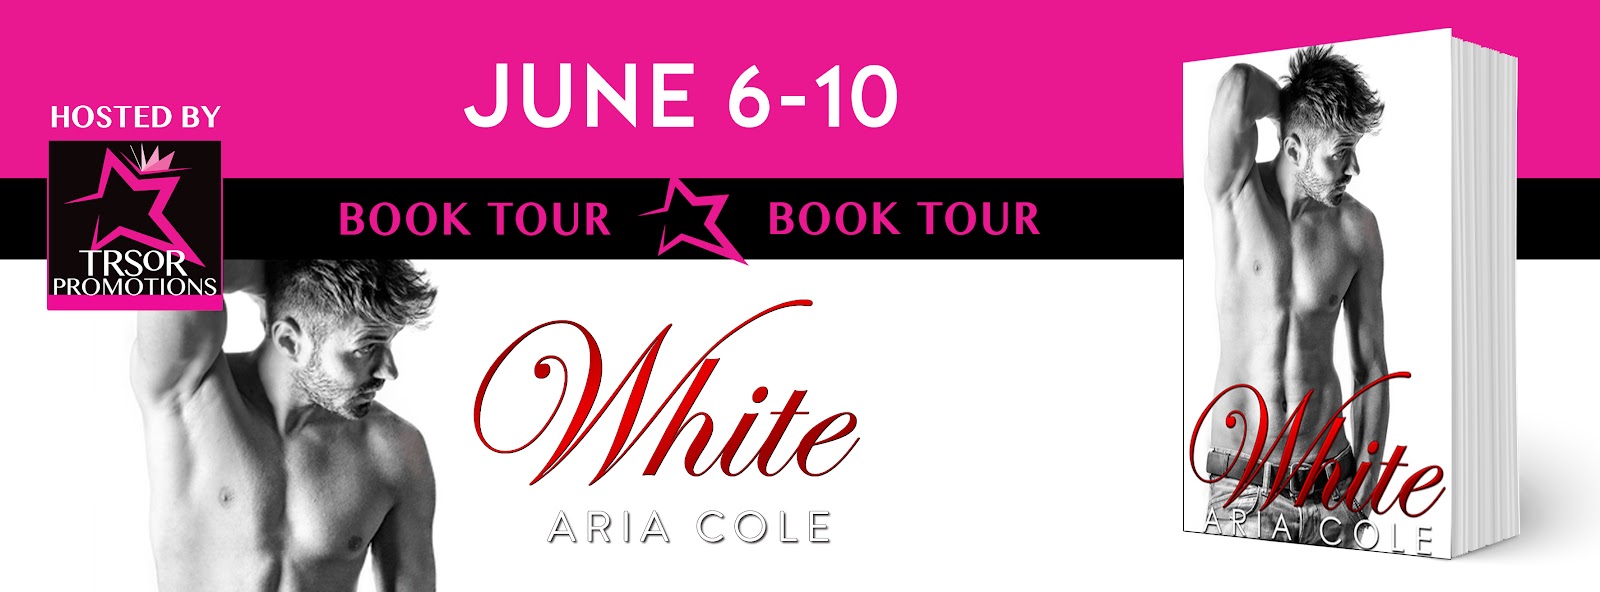 WHITE_BOOK_TOUR.jpg